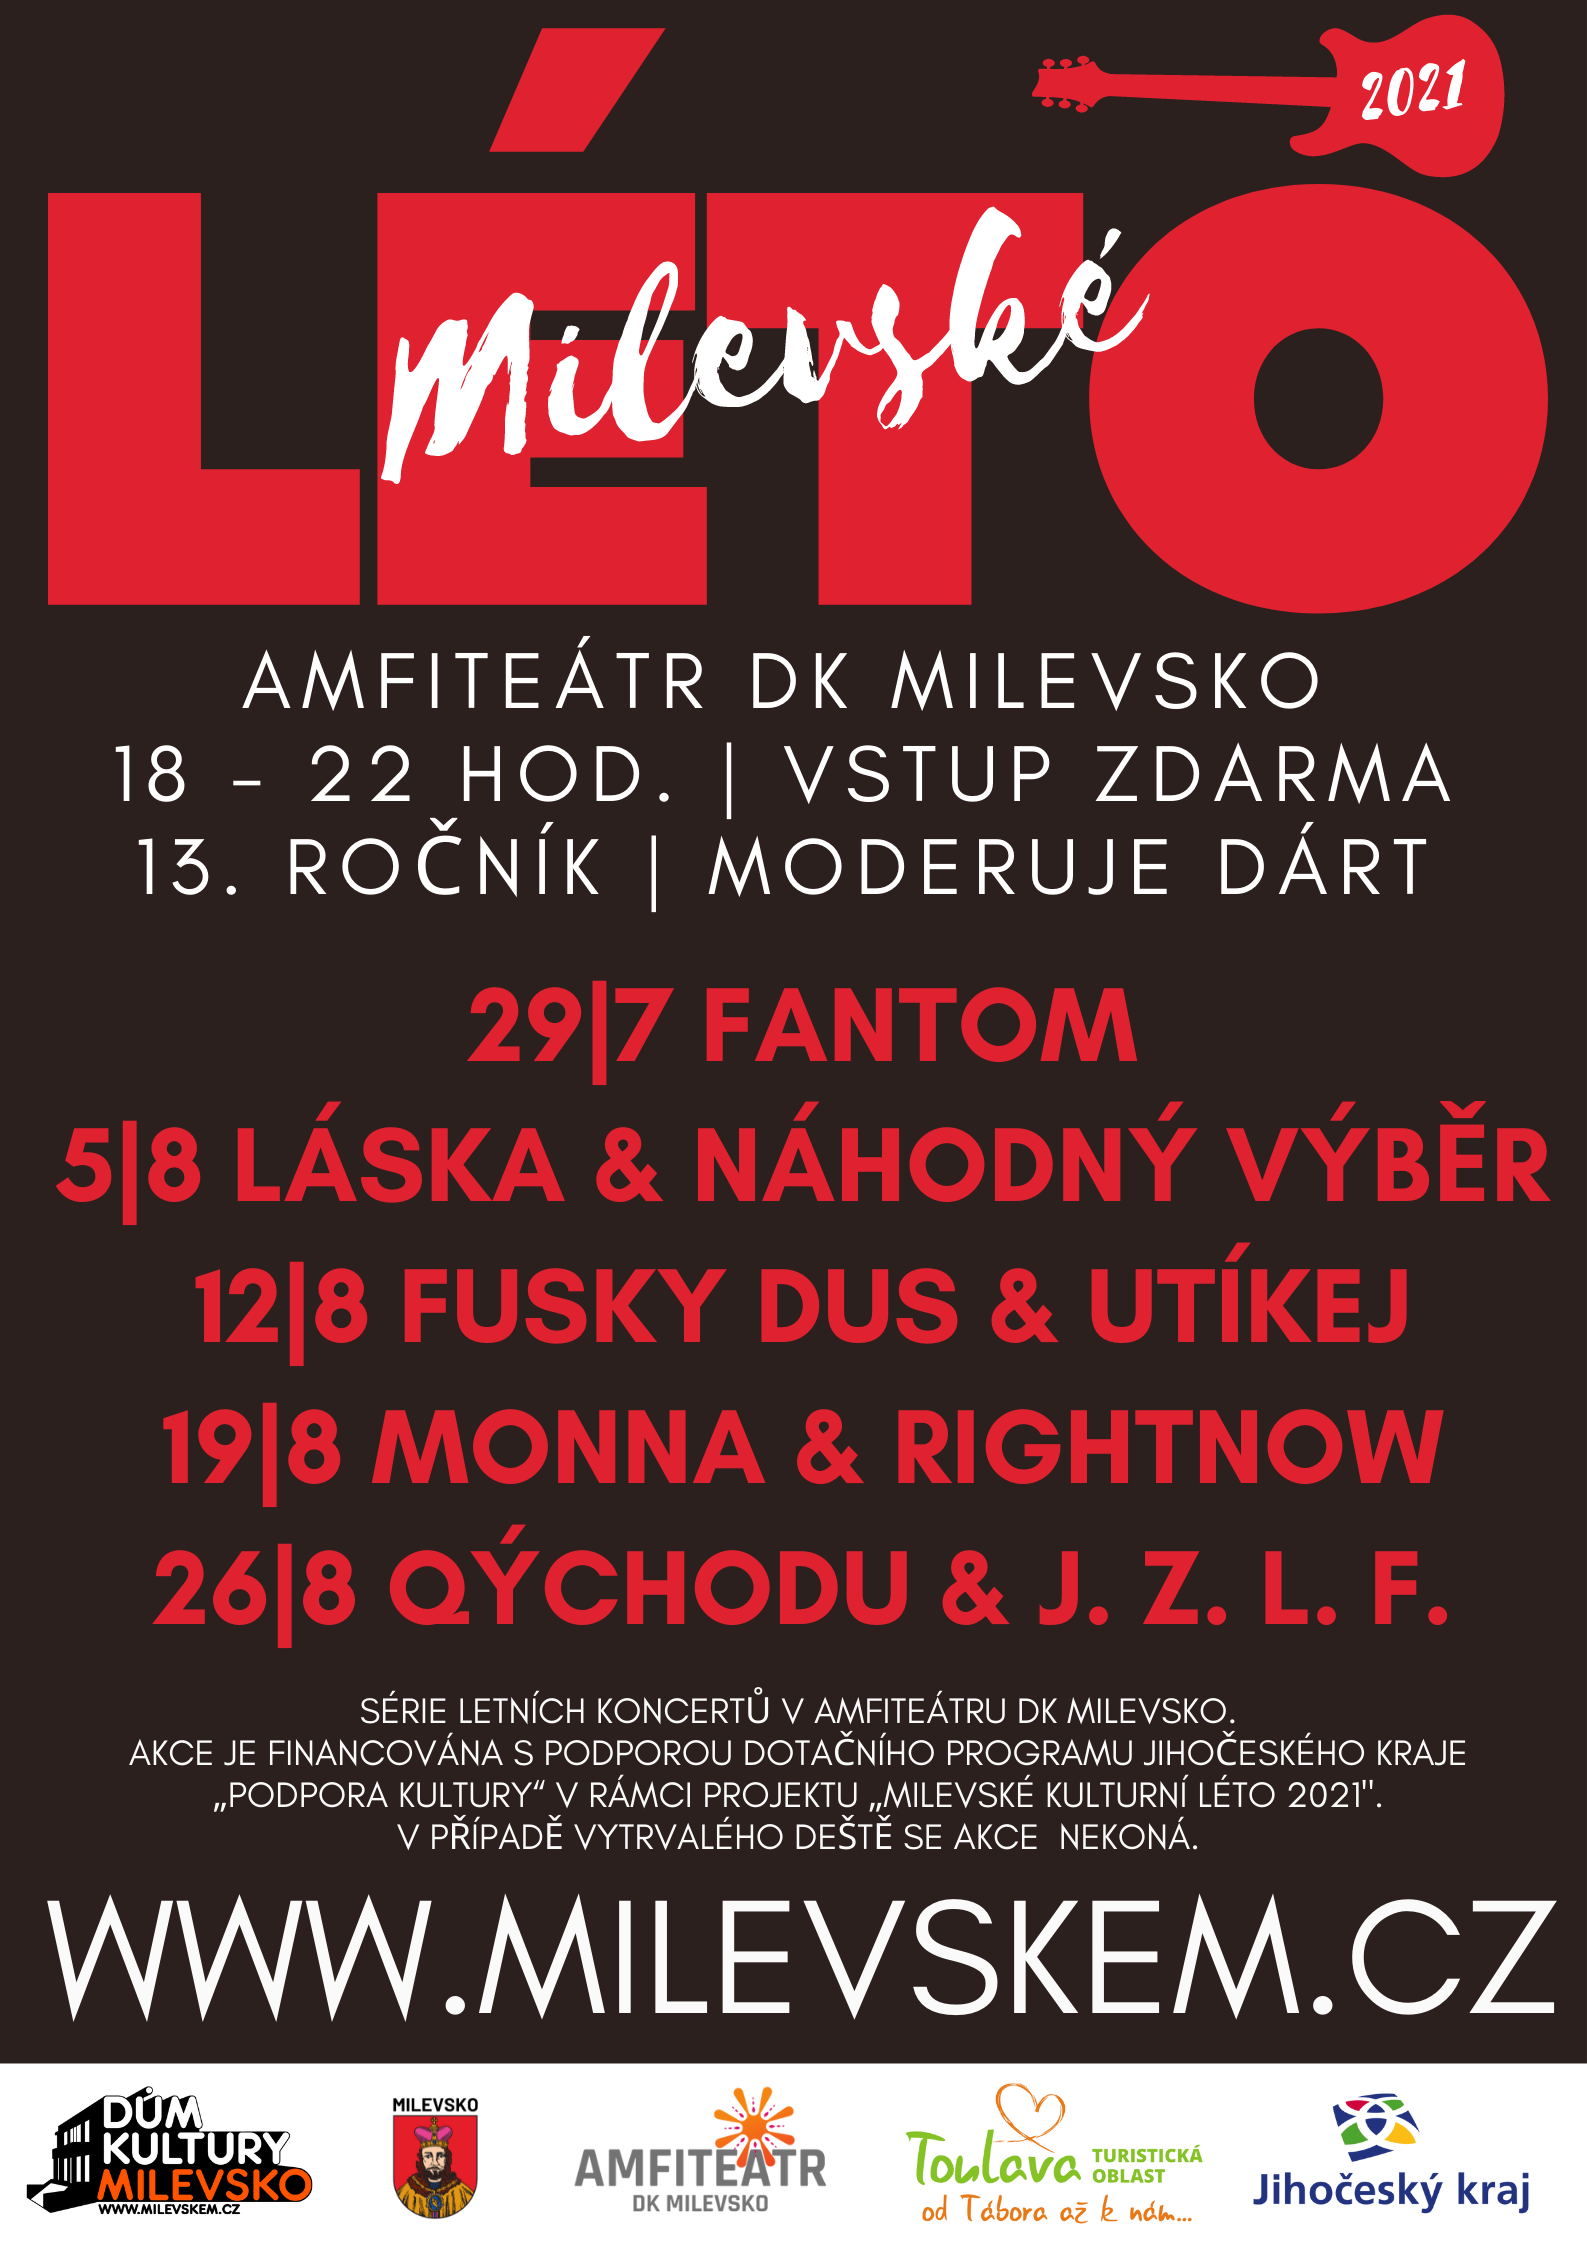 Plakát Milevské léto - Qýchodu & J. Z. L. F.